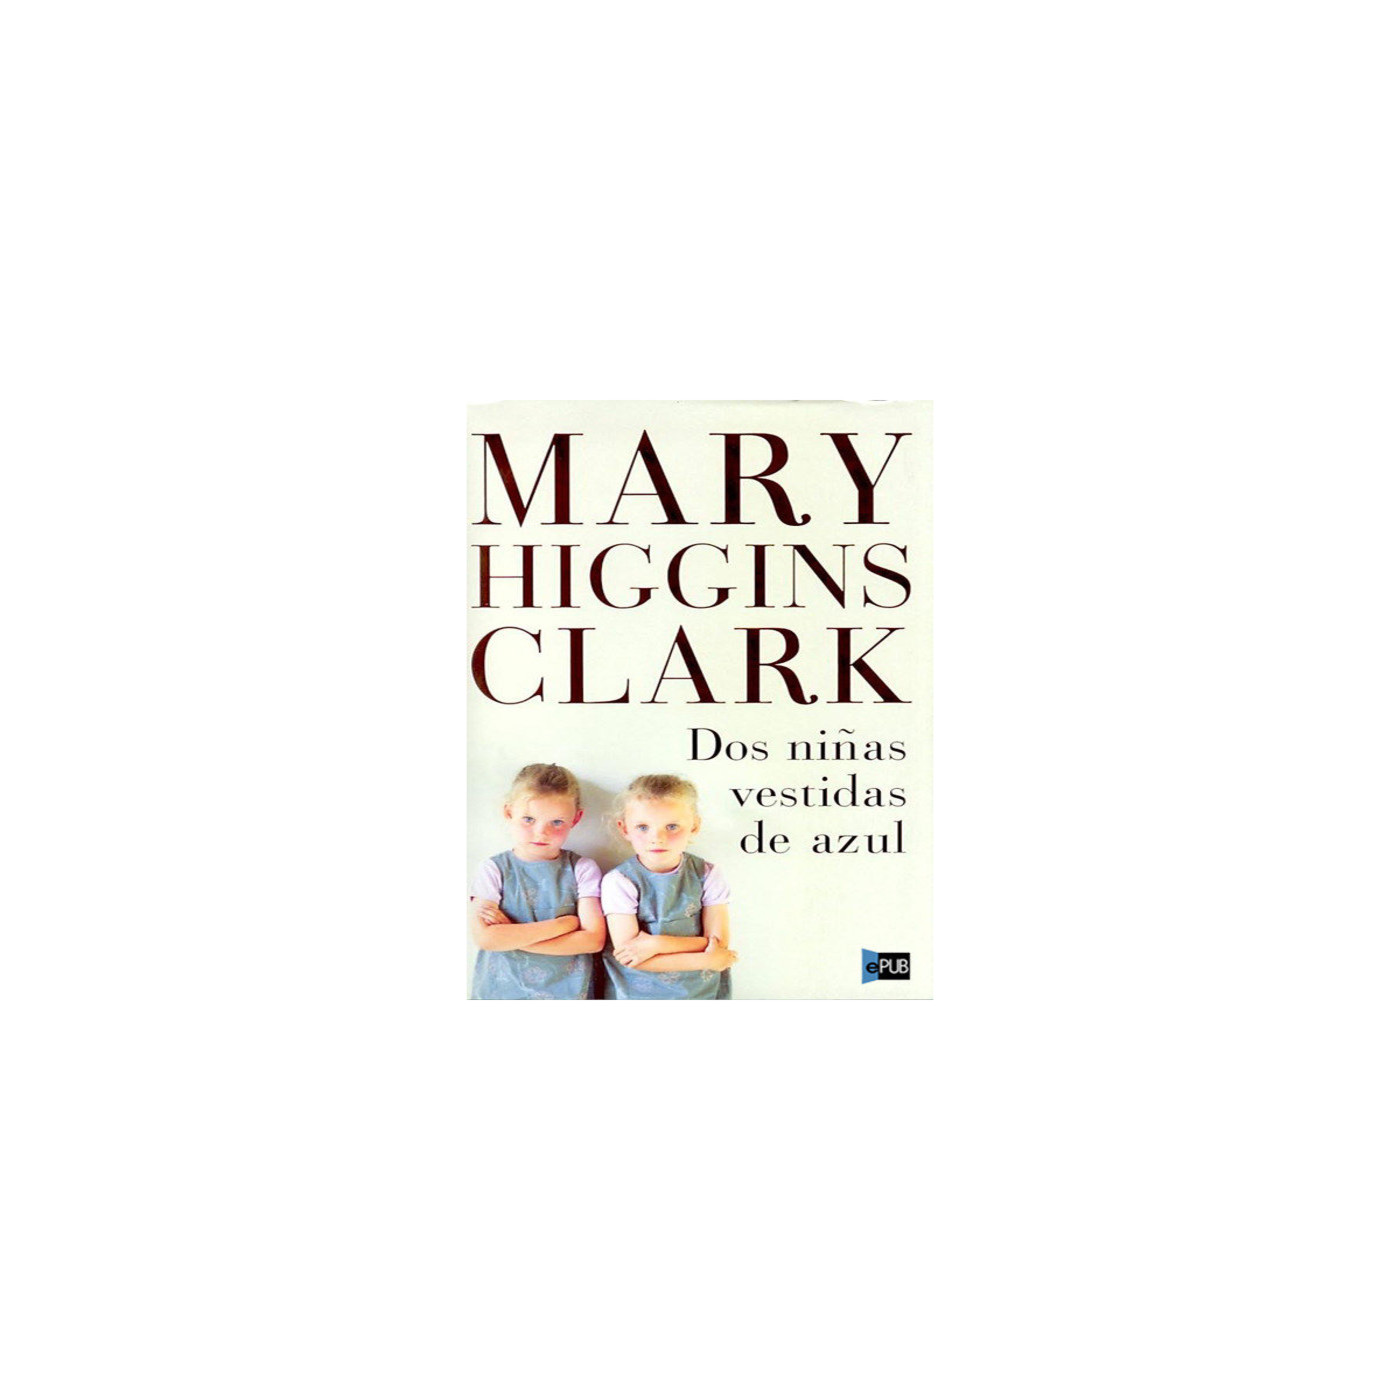 Dos niñas vestidas de azul de Mary Higgins Clark - Podcast en iVoox